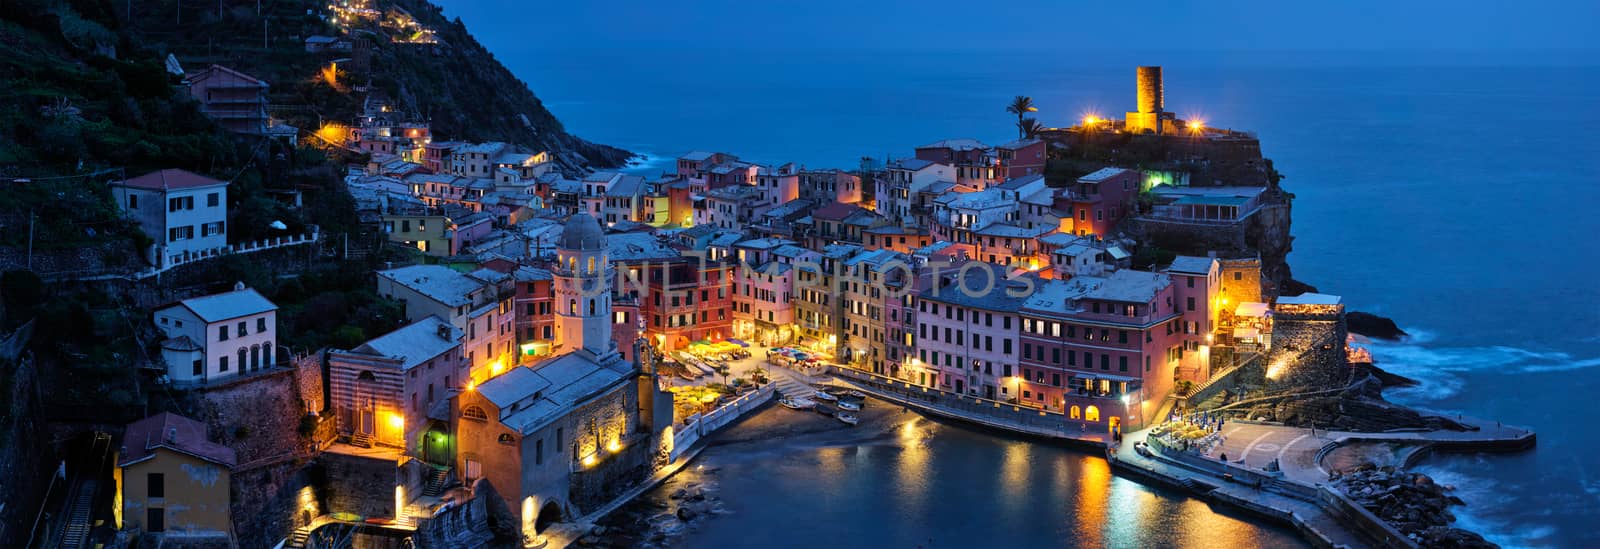 Vernazza village illuminated in the night, Cinque Terre, Liguria, Italy by dimol